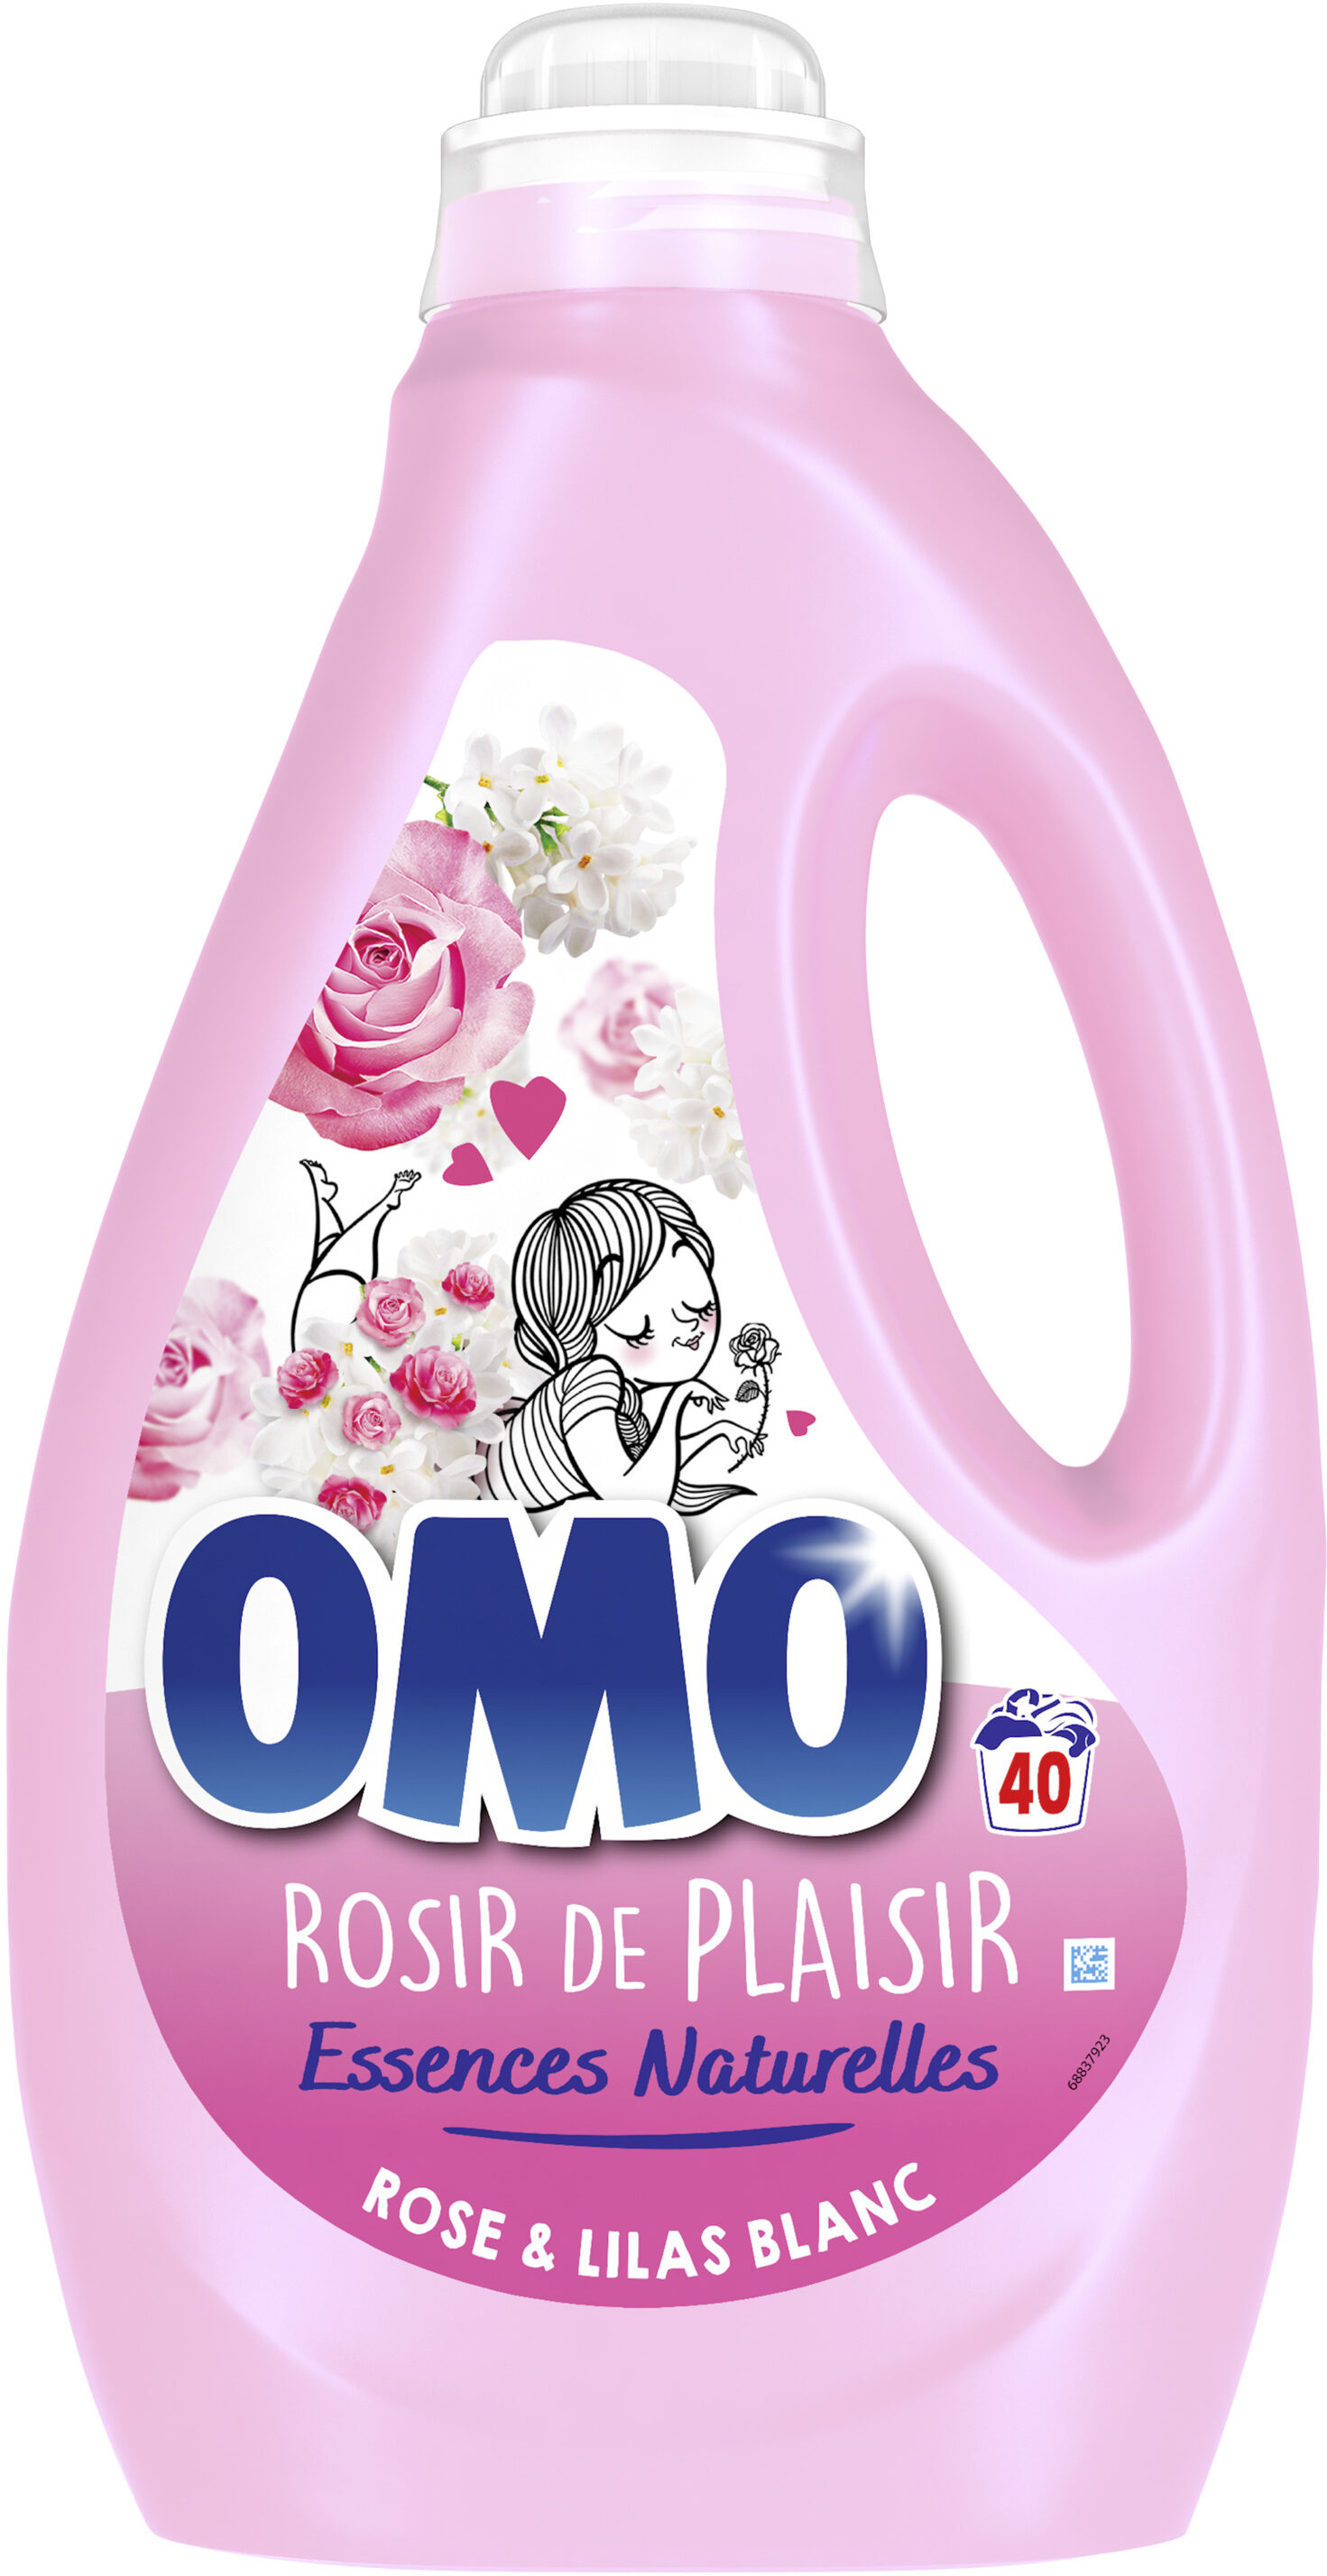 Omo Lessive Liquide Rose & Lilas Blanc 2l 40 Lavages - Produit - fr